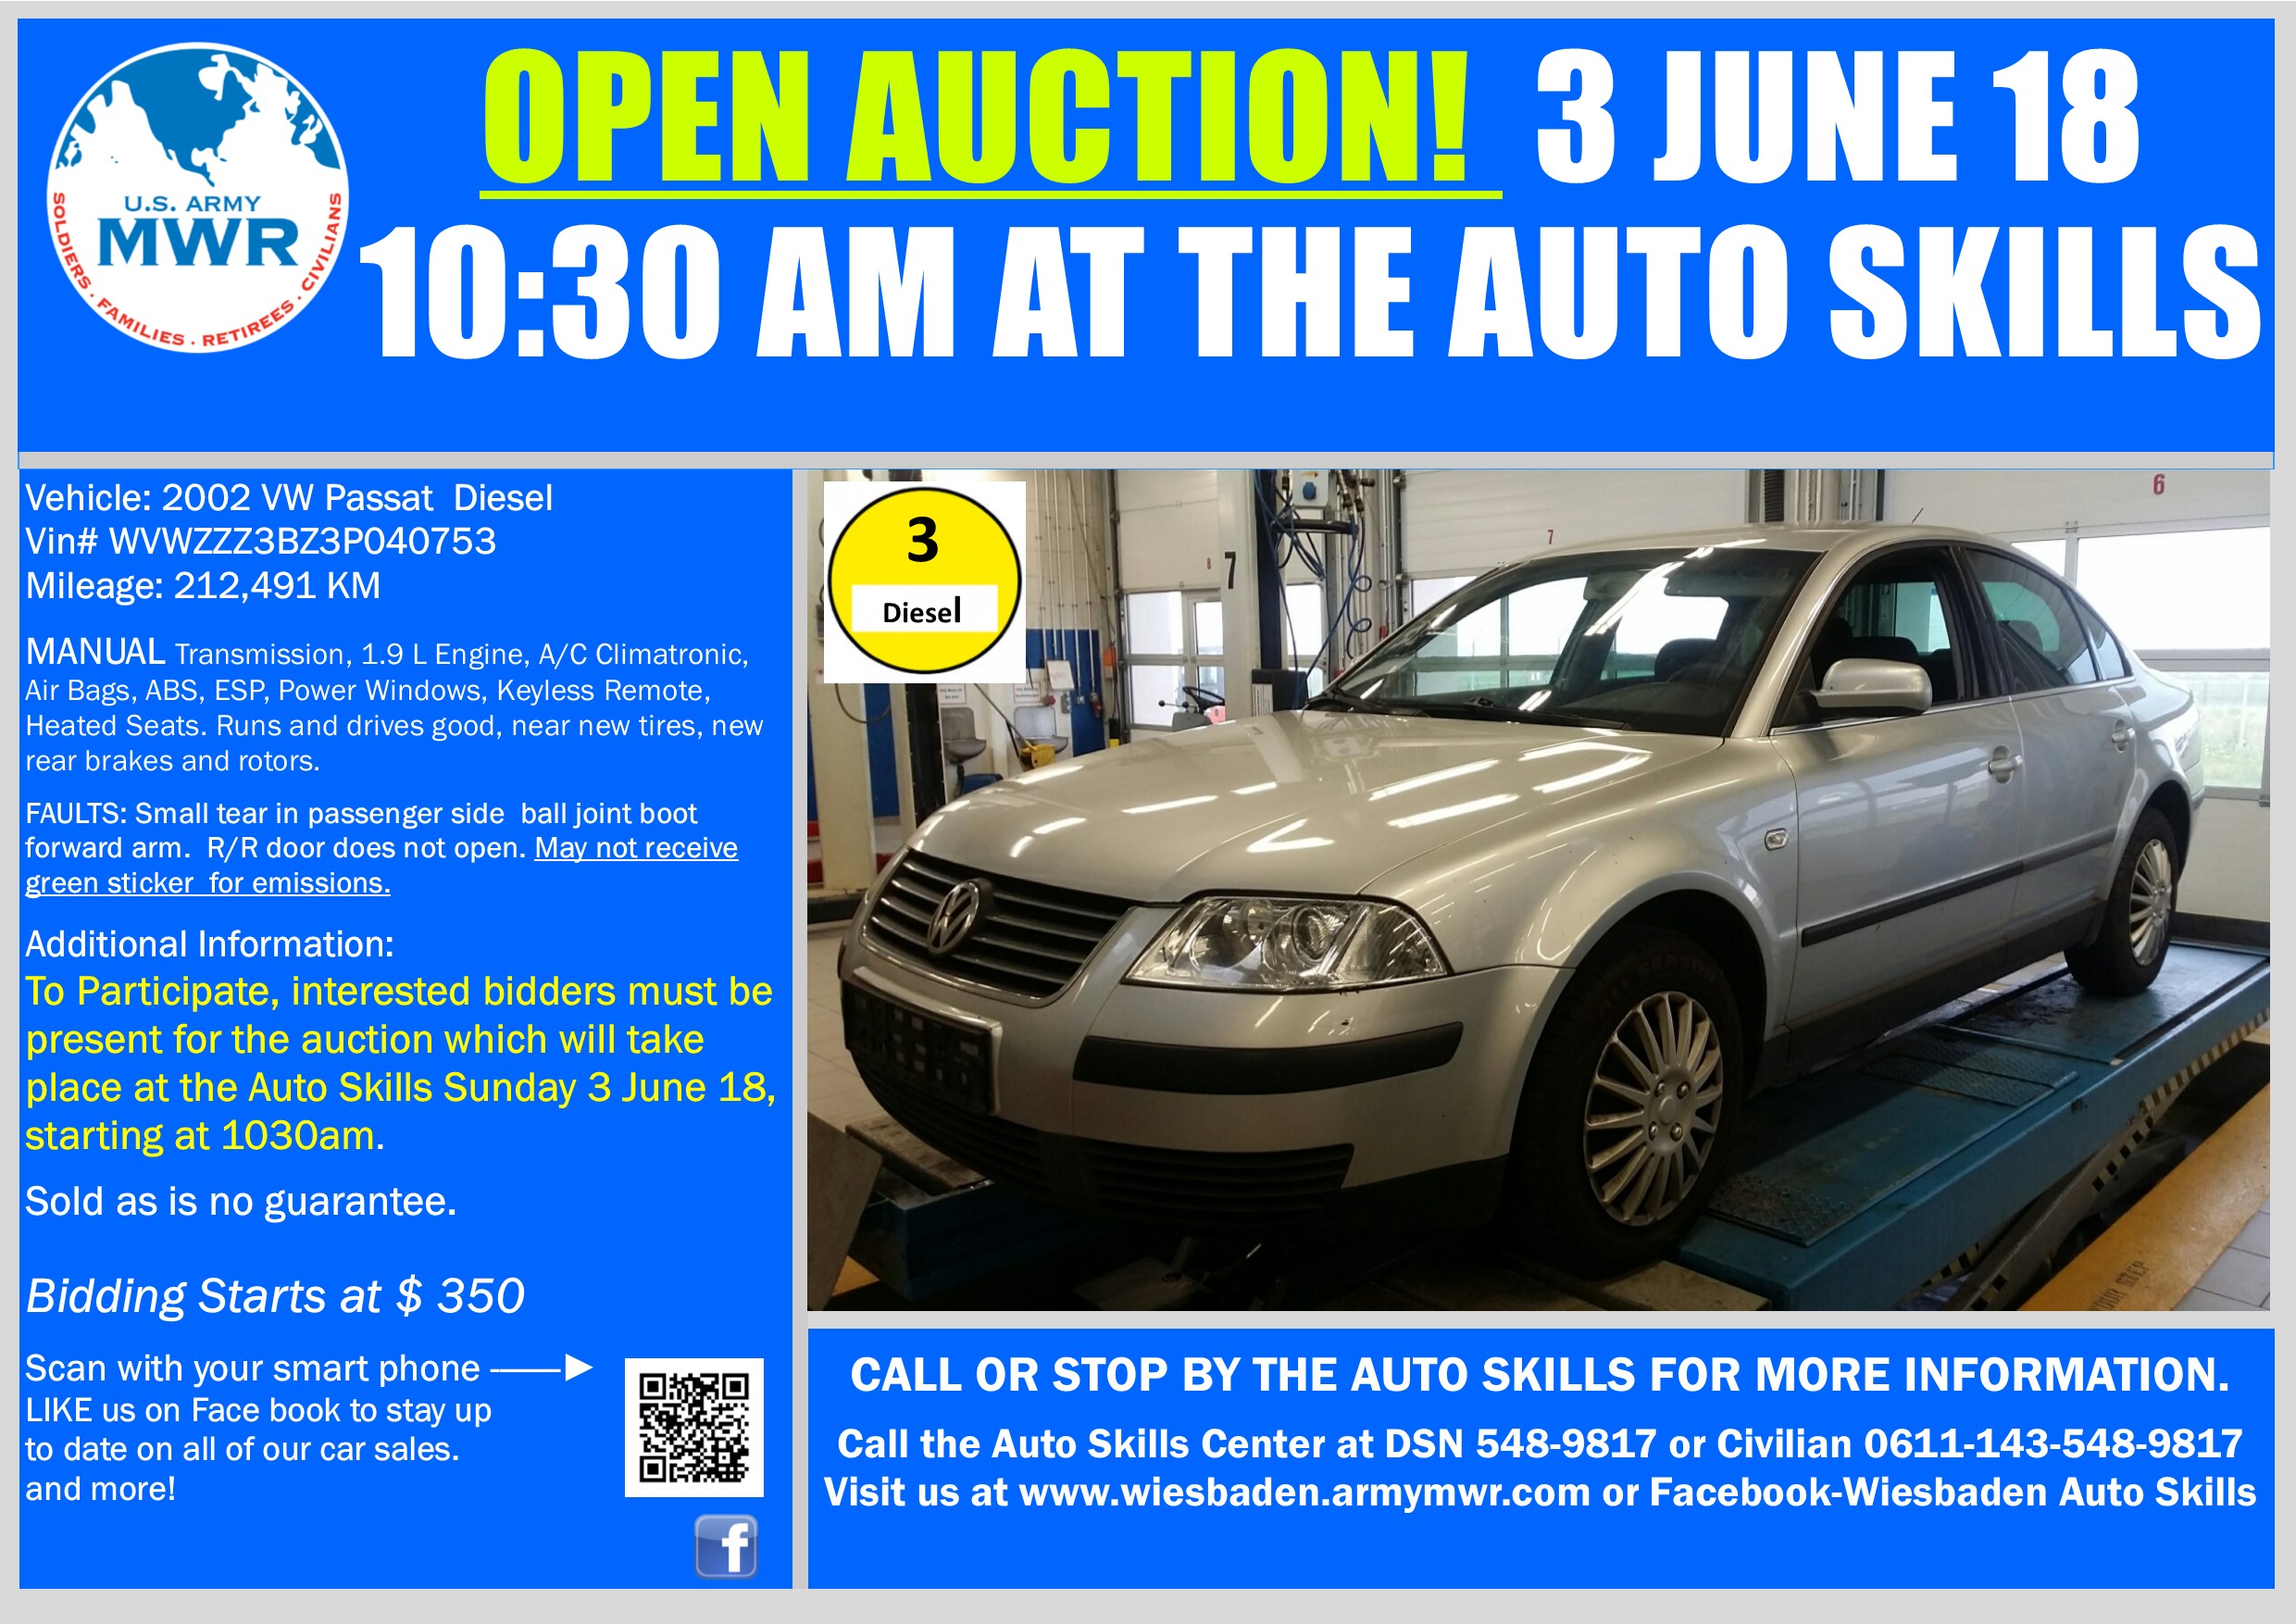 Sale_VW Passat 3 June 18 Open Auction.jpg